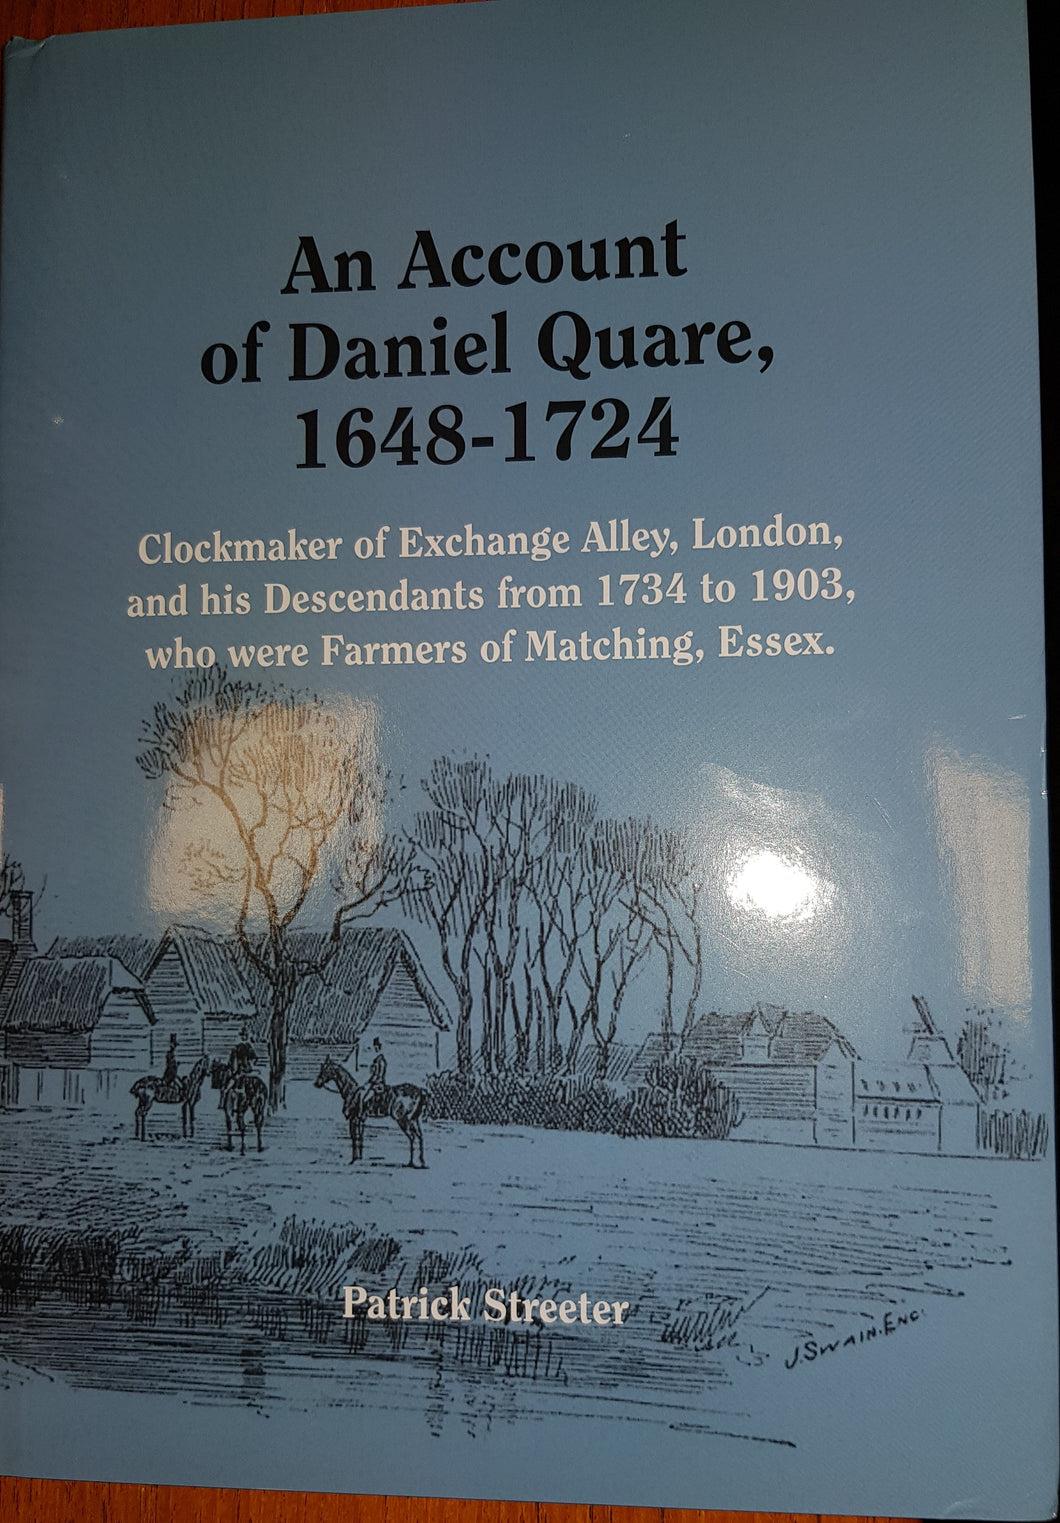 An Account of Daniel Quare 1648-1724